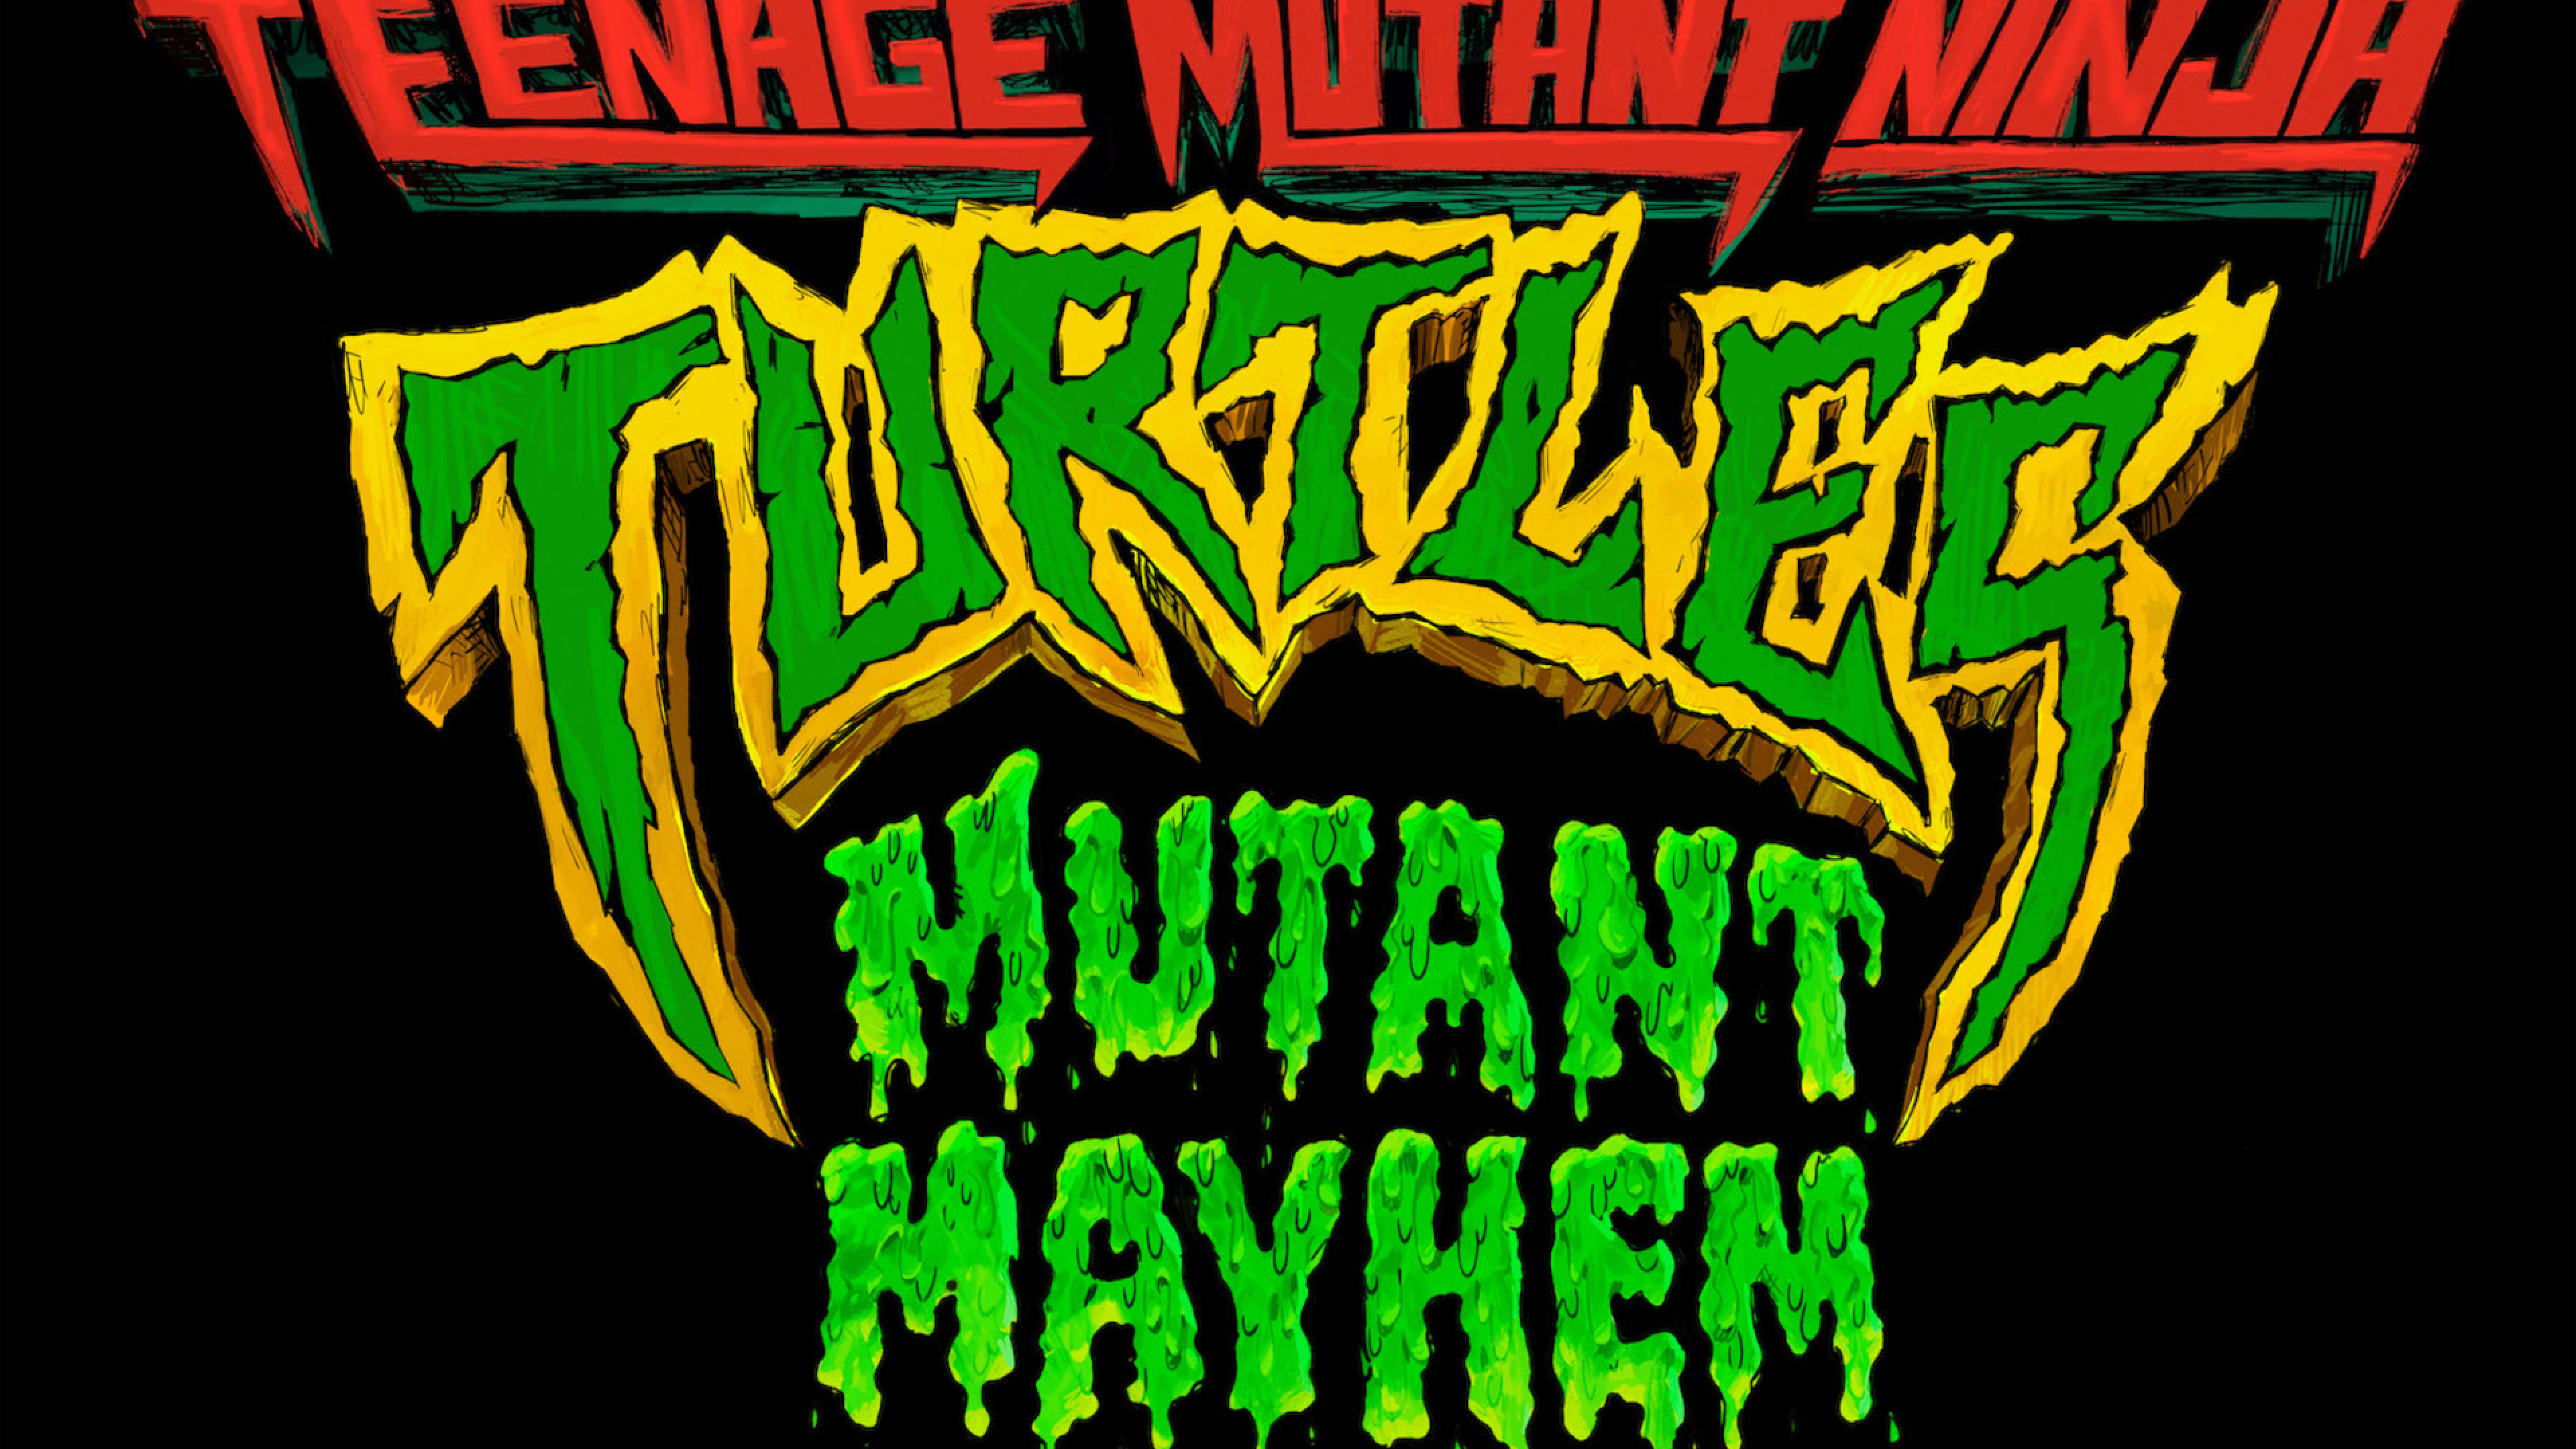 Turtles teenage mutant mayhem. Teenage Mutant Ninja Turtles: Mutant Mayhem. Карточки TMNT Mutant Mayhem. Черепашки-ниндзя-мутанты: погром мутантов.